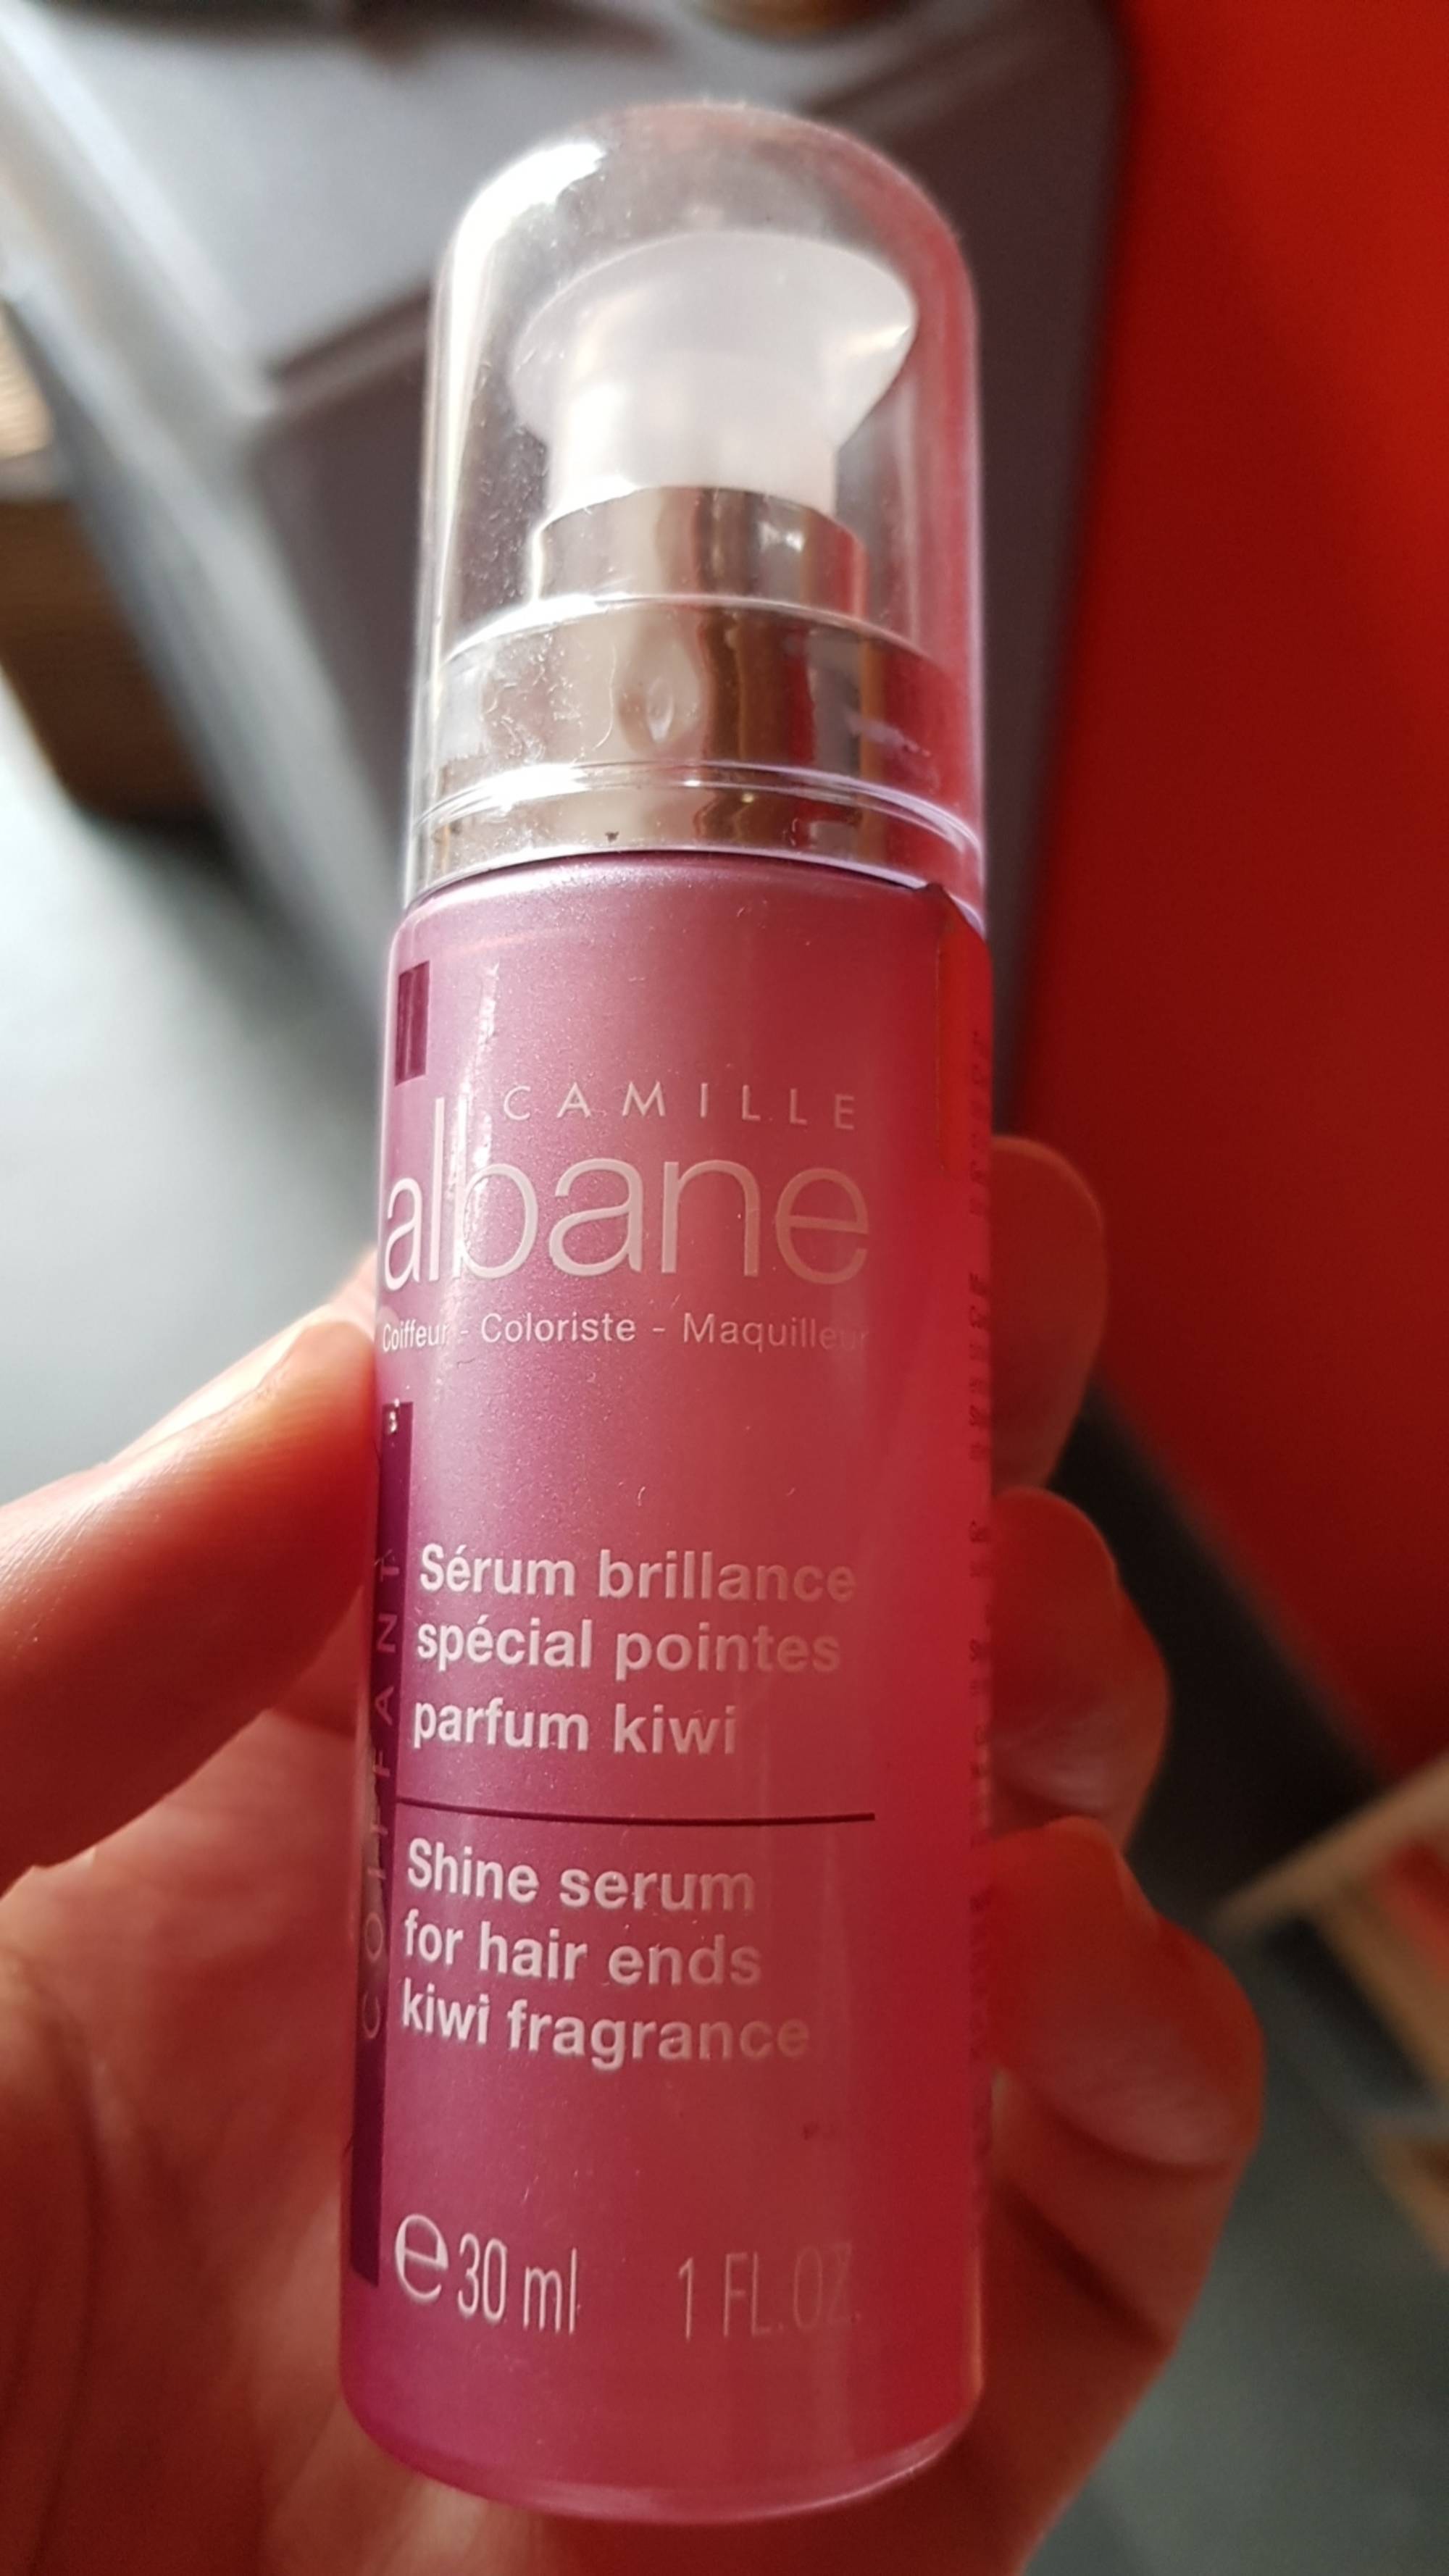 CAMILLE ALBANE - Sérum brillance spécial pointes parfum kiwi